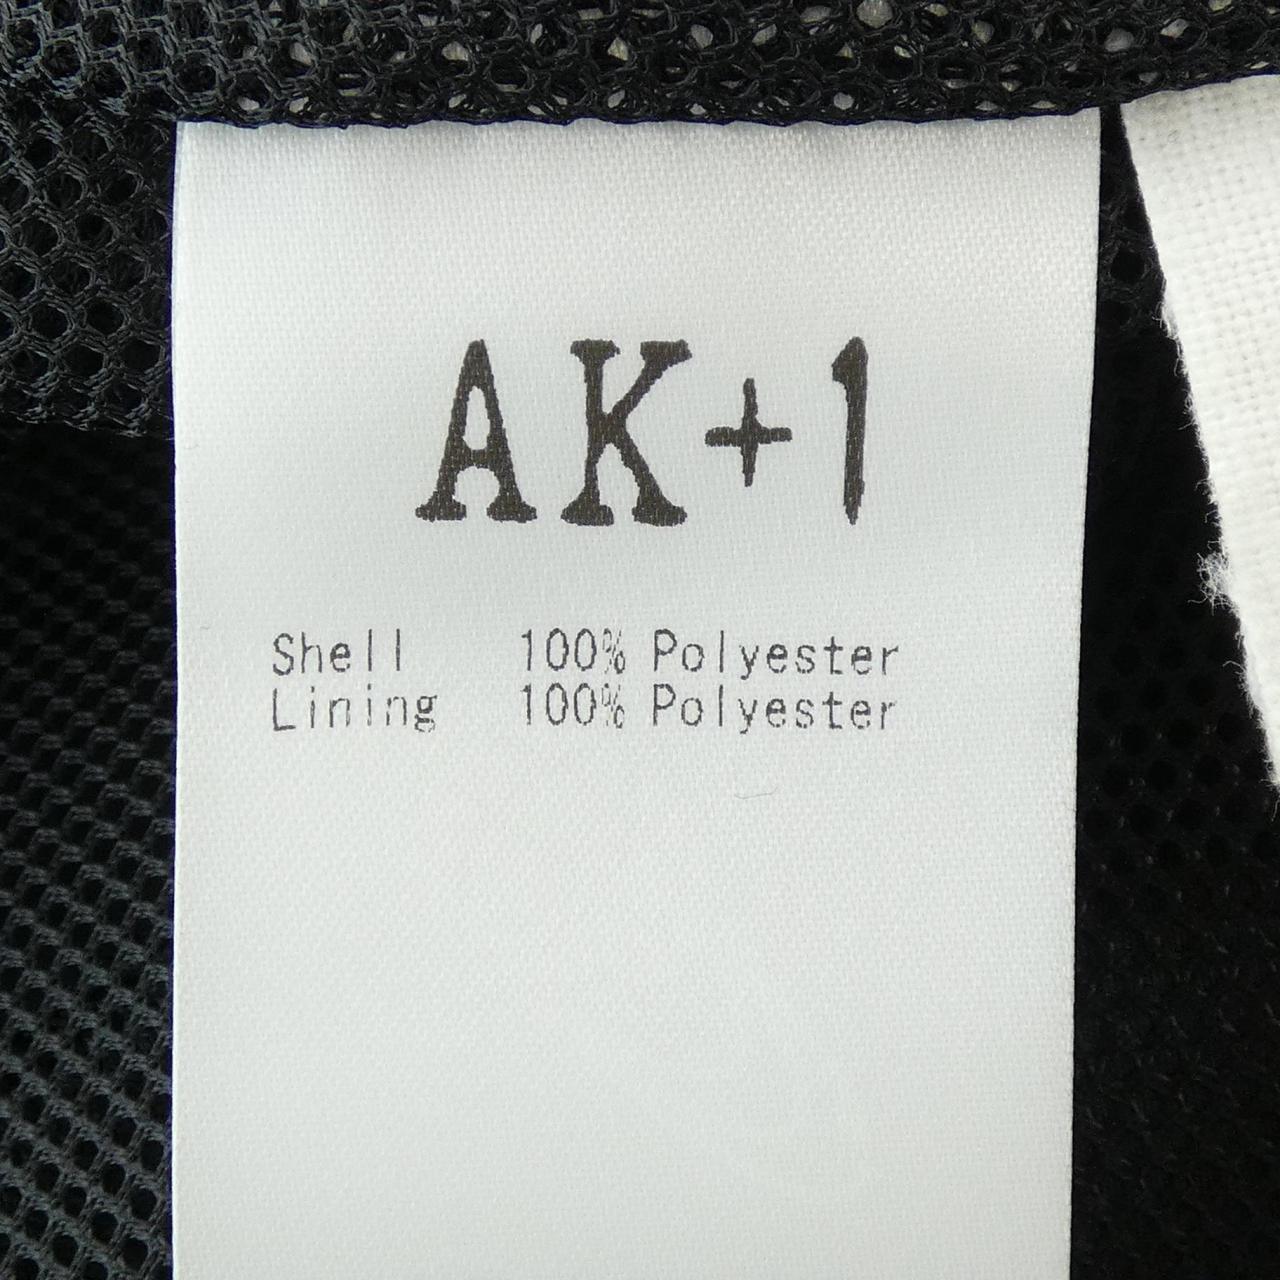 AK+1 one piece